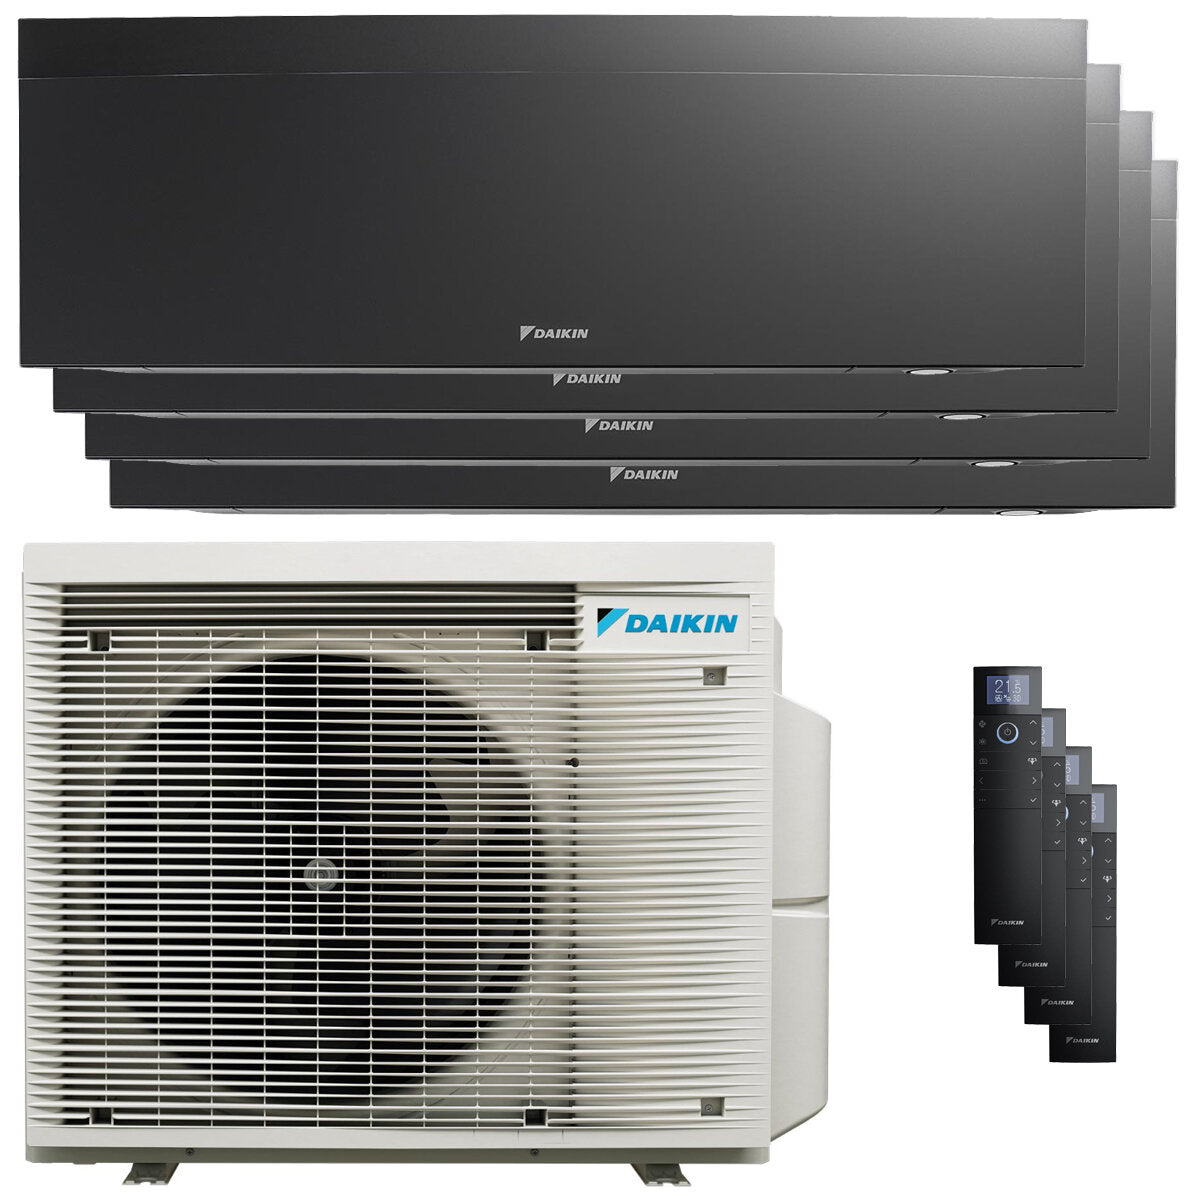 Daikin Emura air conditioner 3 split panels 7000 + 7000 + 9000 + 12000 BTU inverter A + wifi outdoor unit 6.8 kW Black